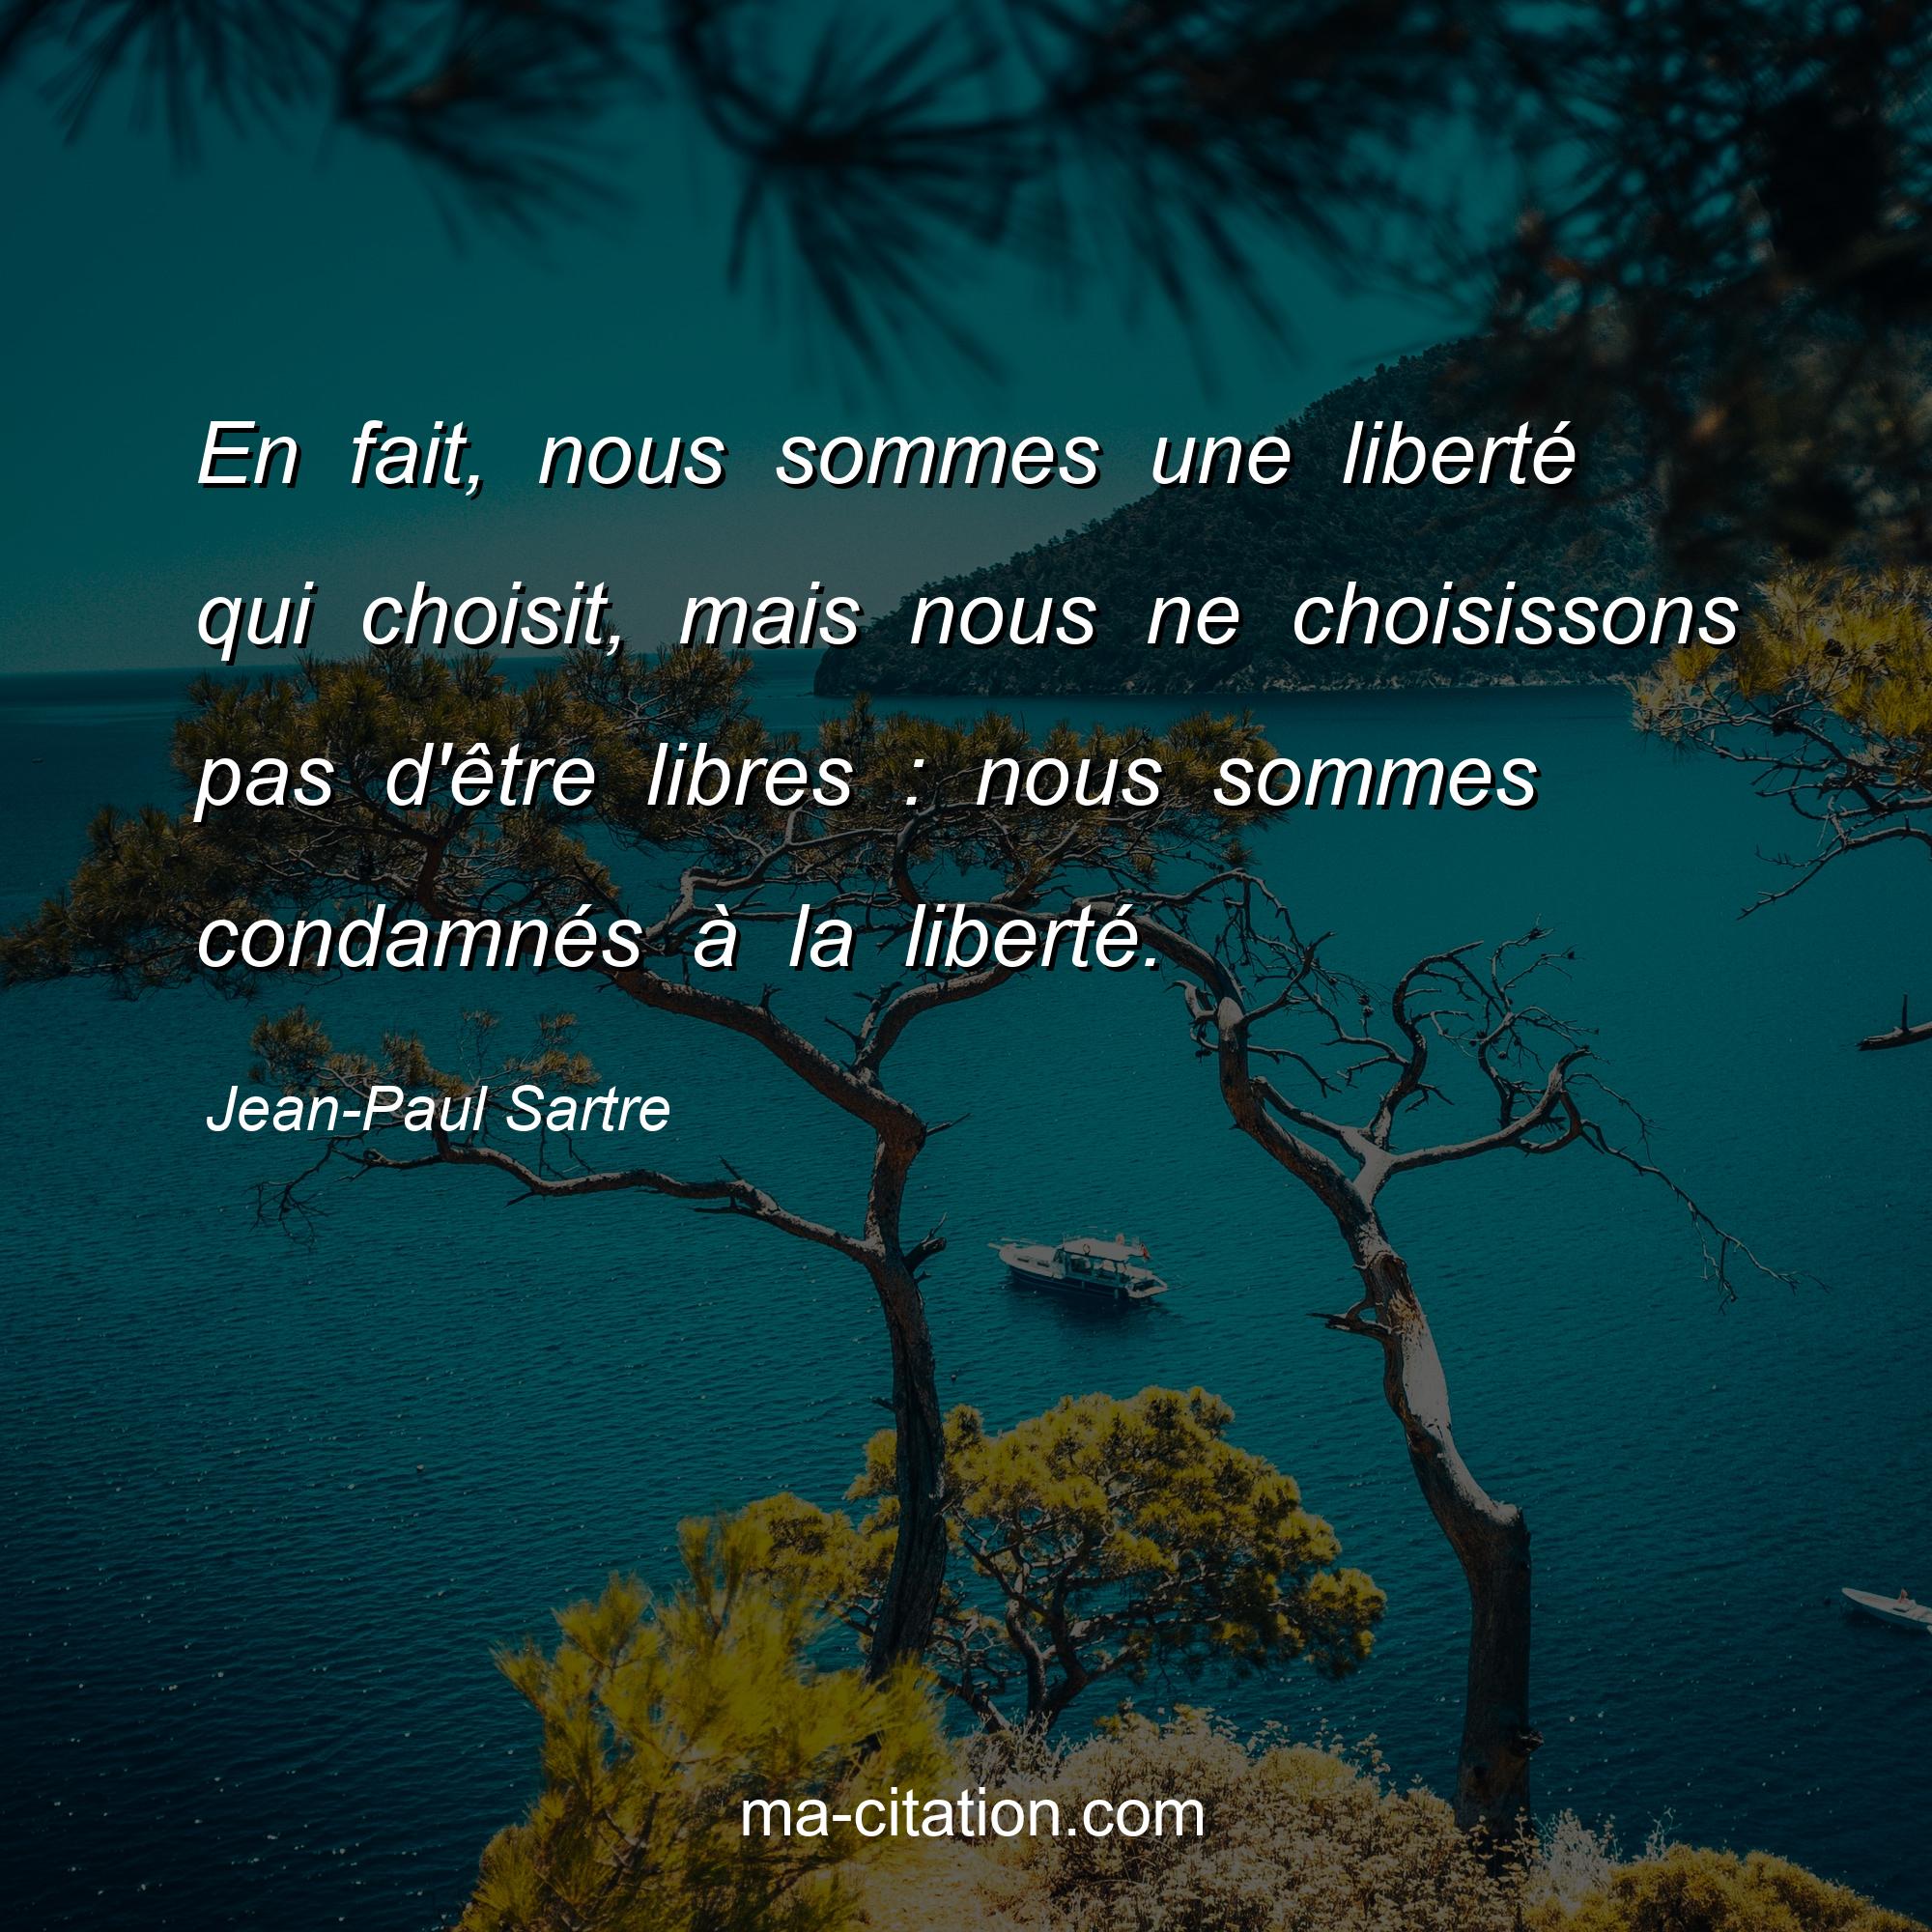 Jean-Paul Sartre : En fait, nous sommes une liberté qui choisit, mais nous ne choisissons pas d'être libres : nous sommes condamnés à la liberté.